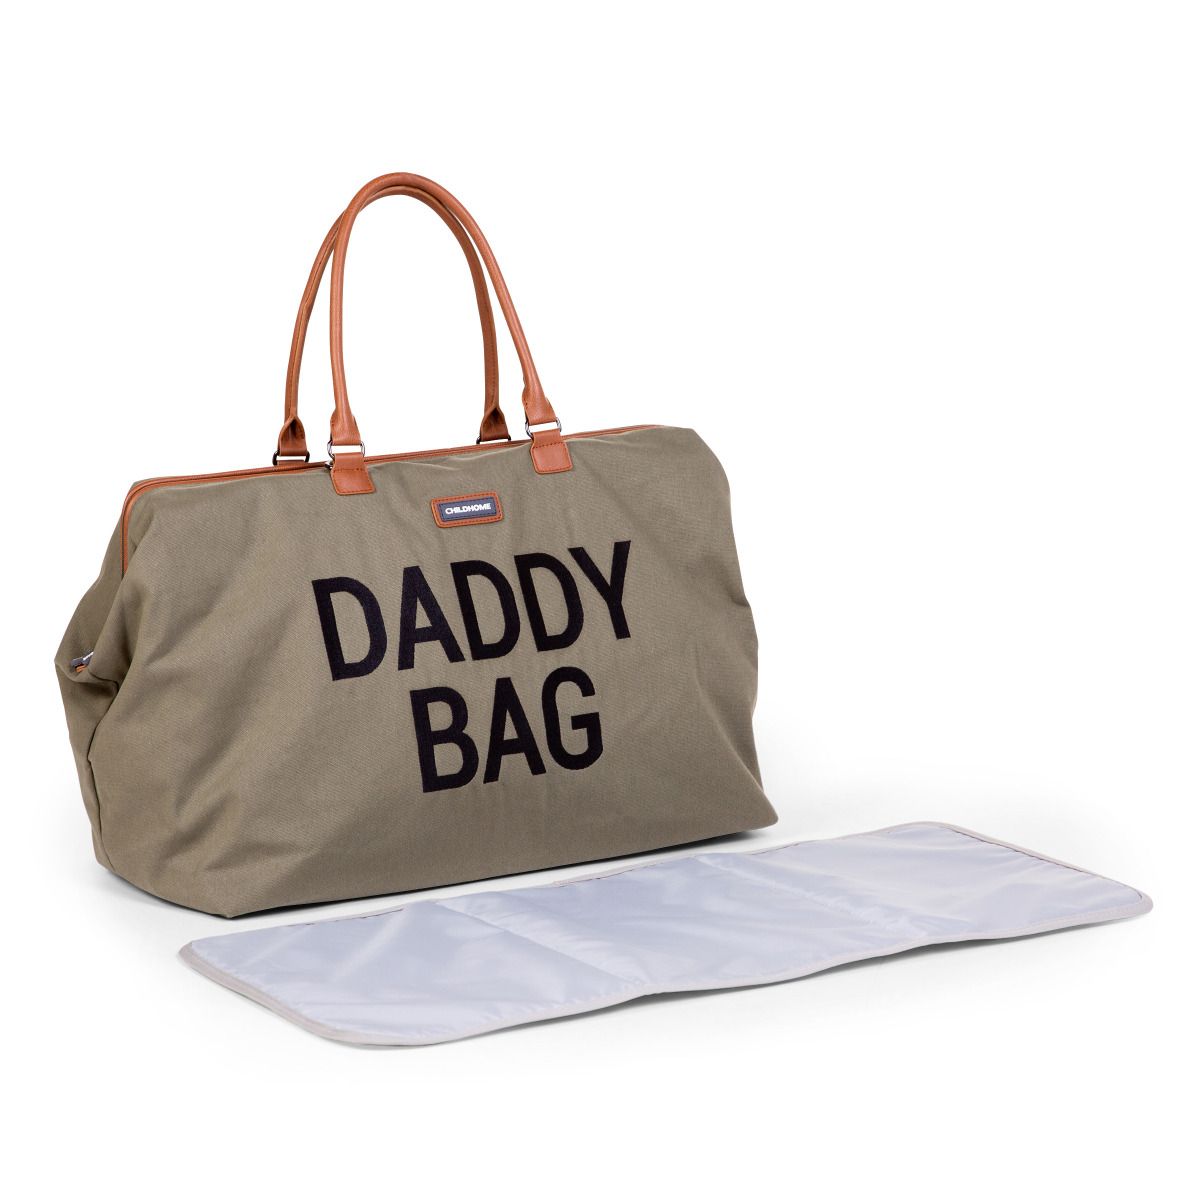 Daddy Bag - Kaki Canvas